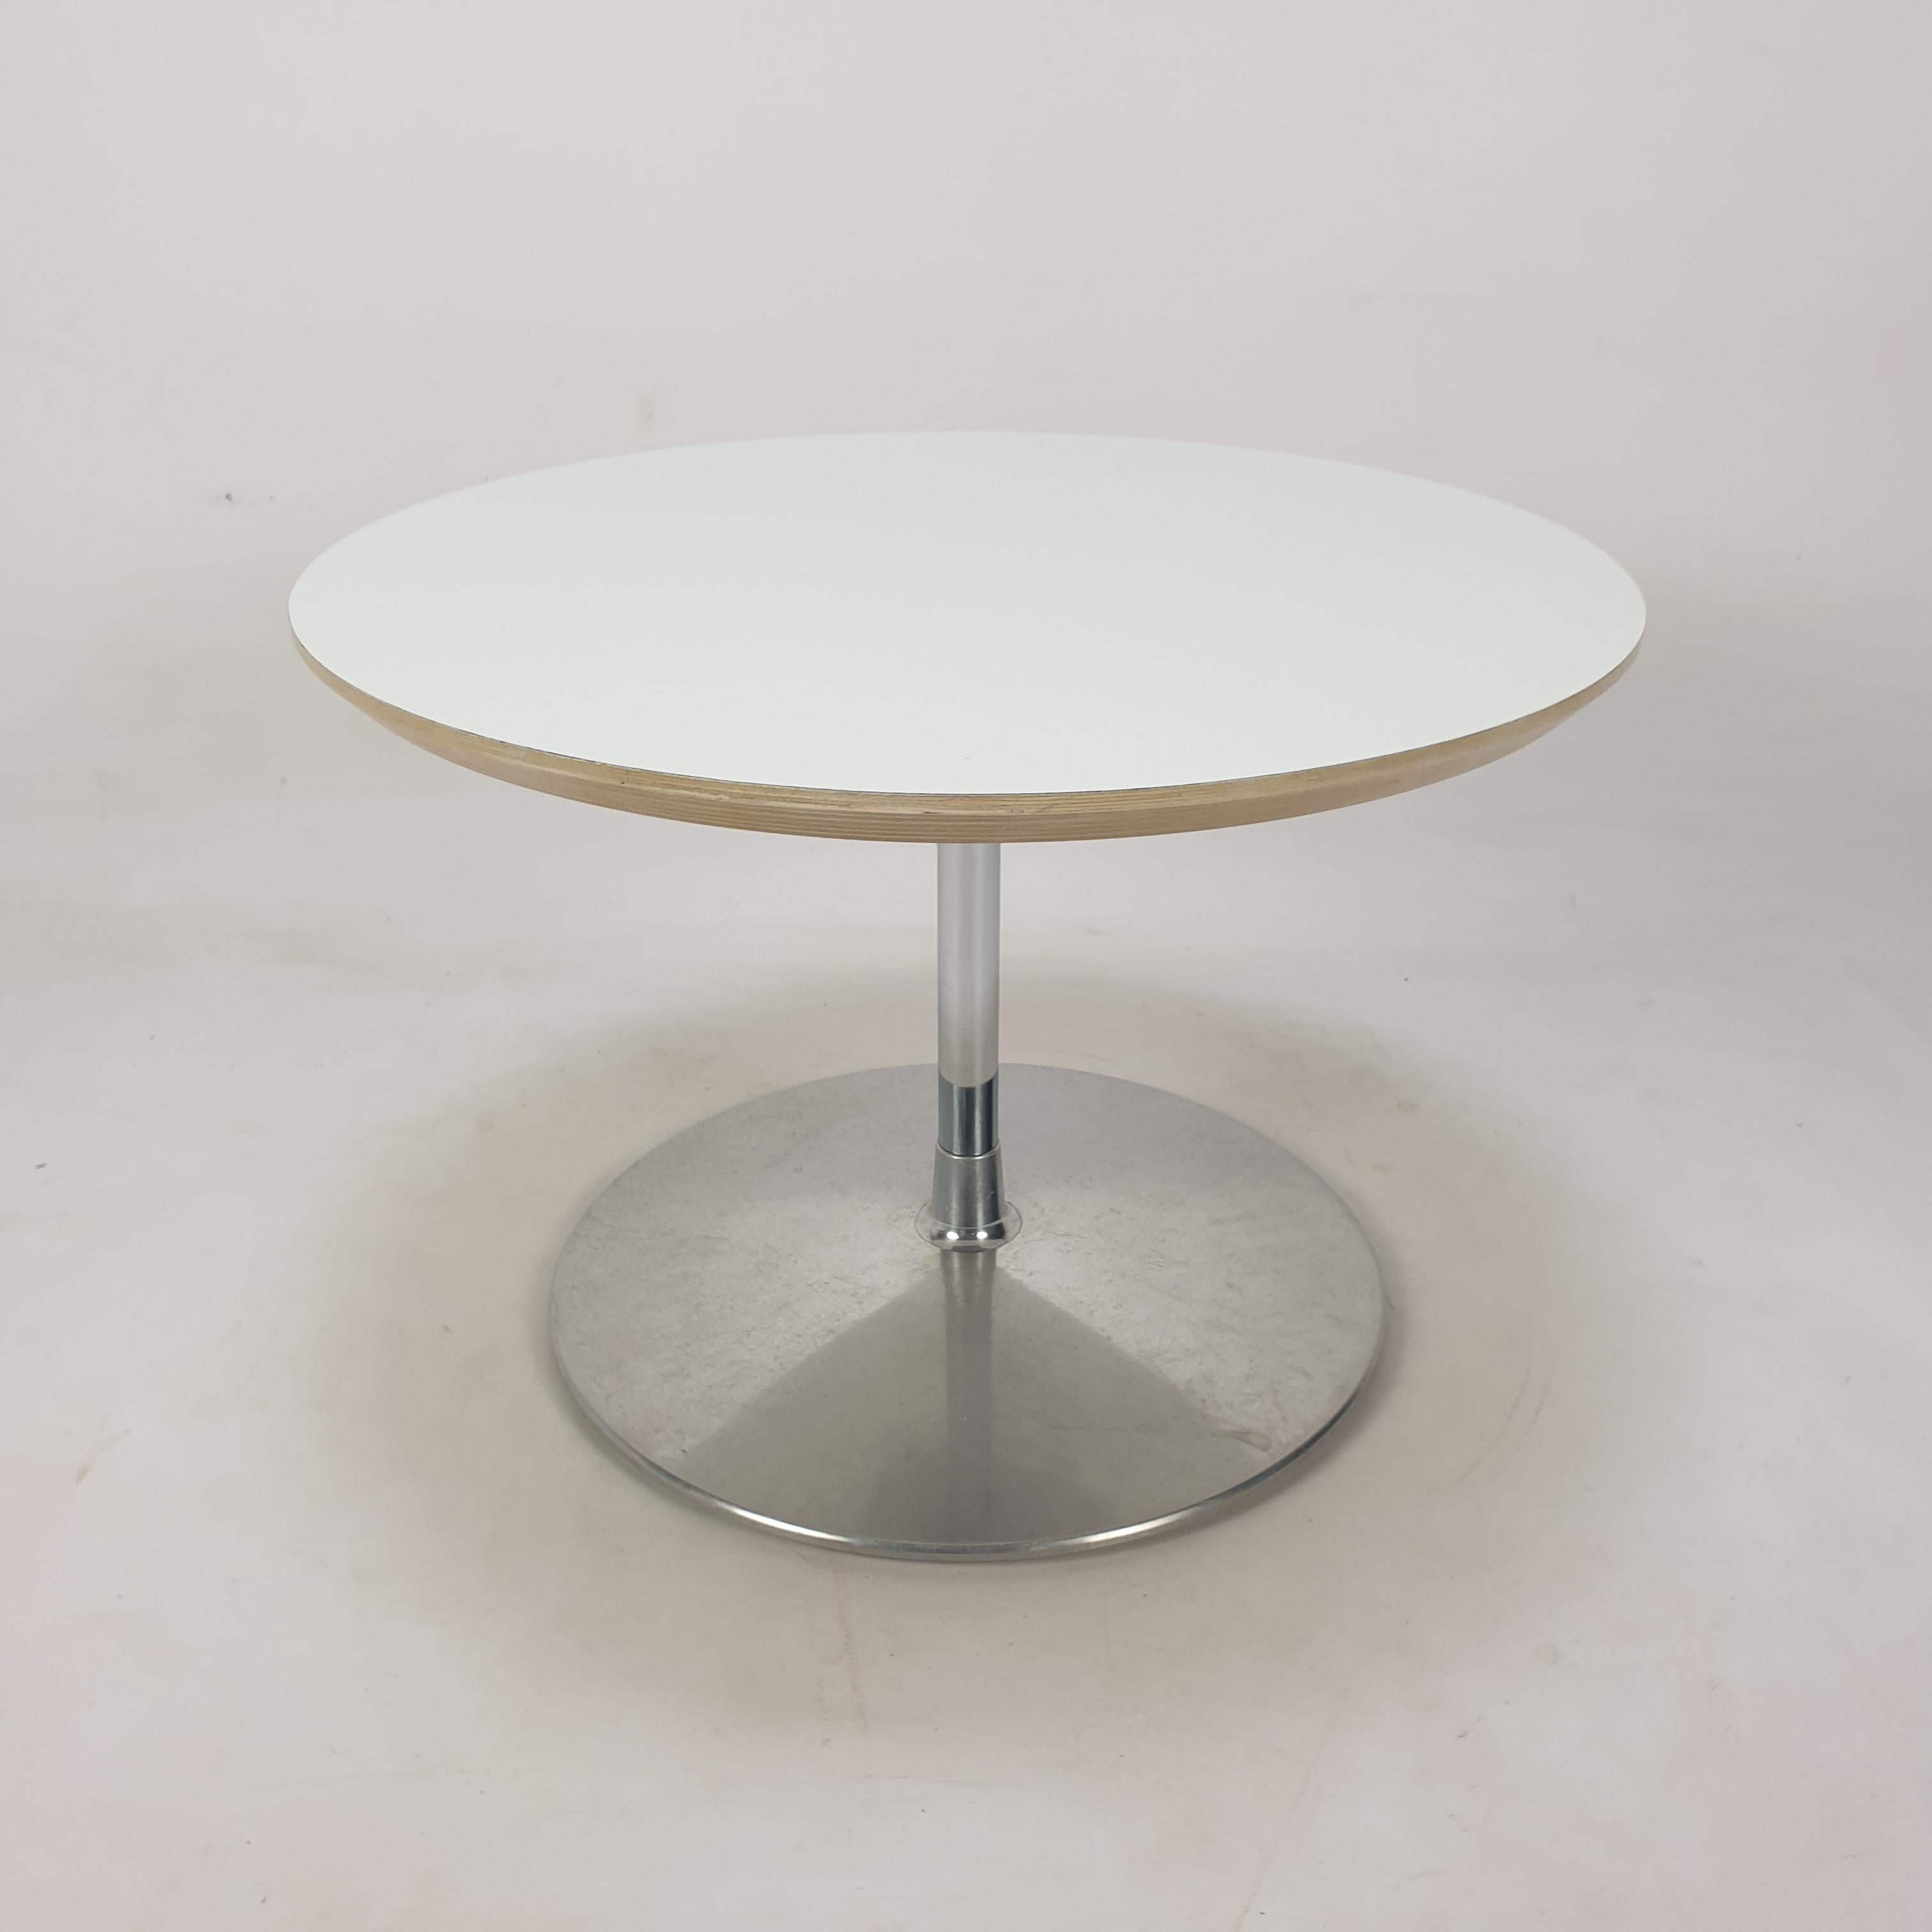 Très belle table basse ronde, conçue par Pierre Paulin dans les années 60. 

Le nom de la table est 